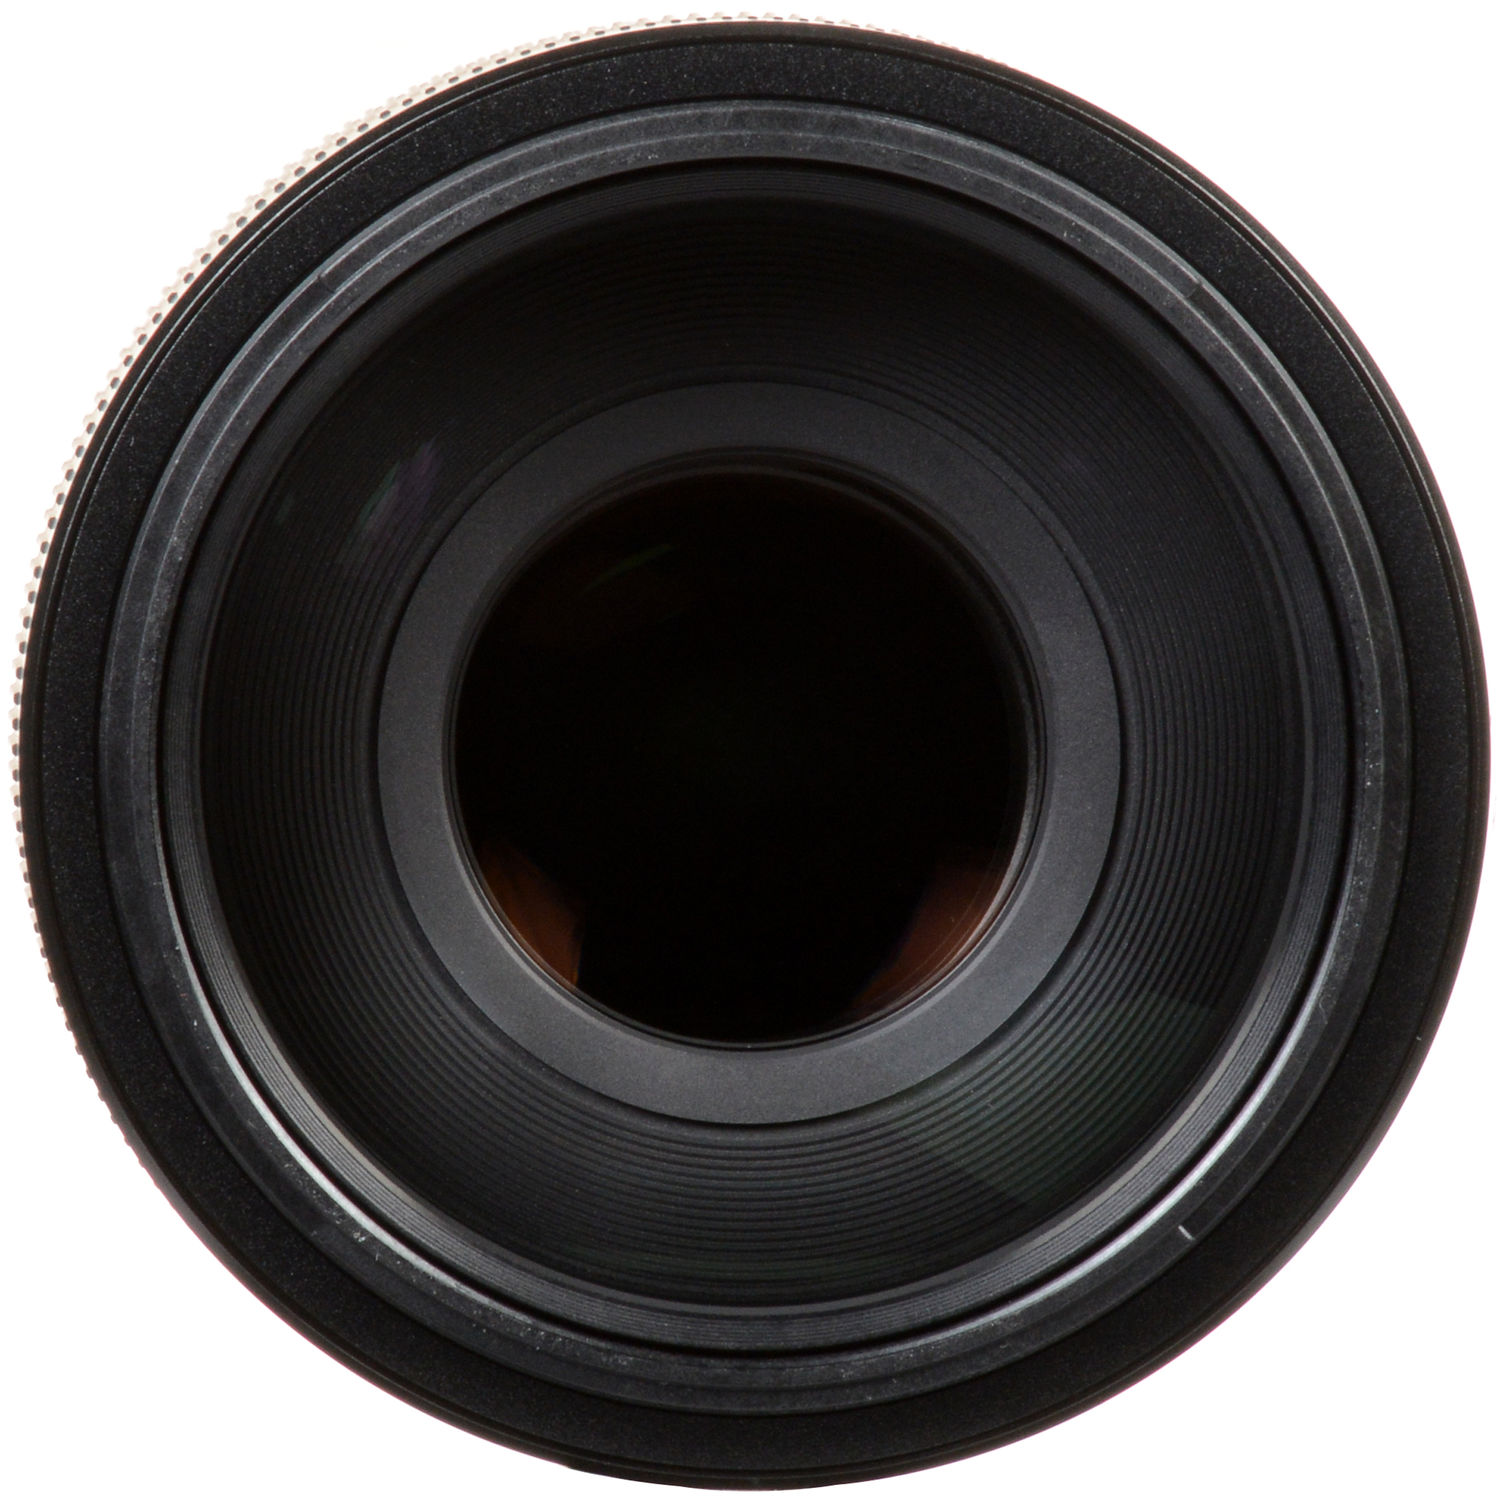 لنز سونی FE 100-400mm f/4.5-5.6 GM OSS